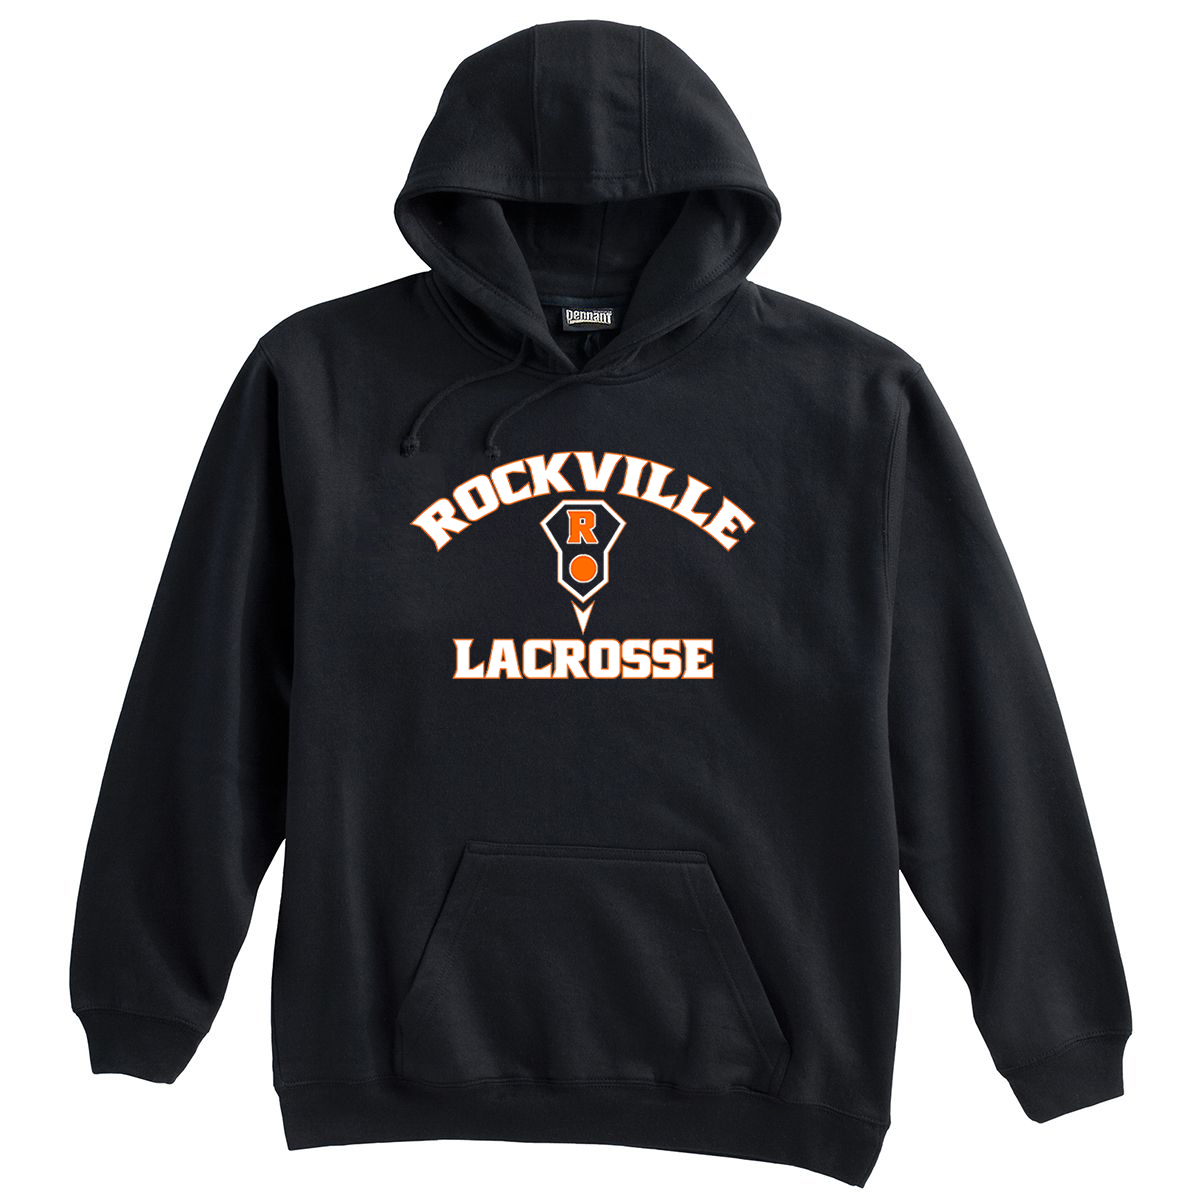 Rockville HS Girls Lacrosse Sweatshirt